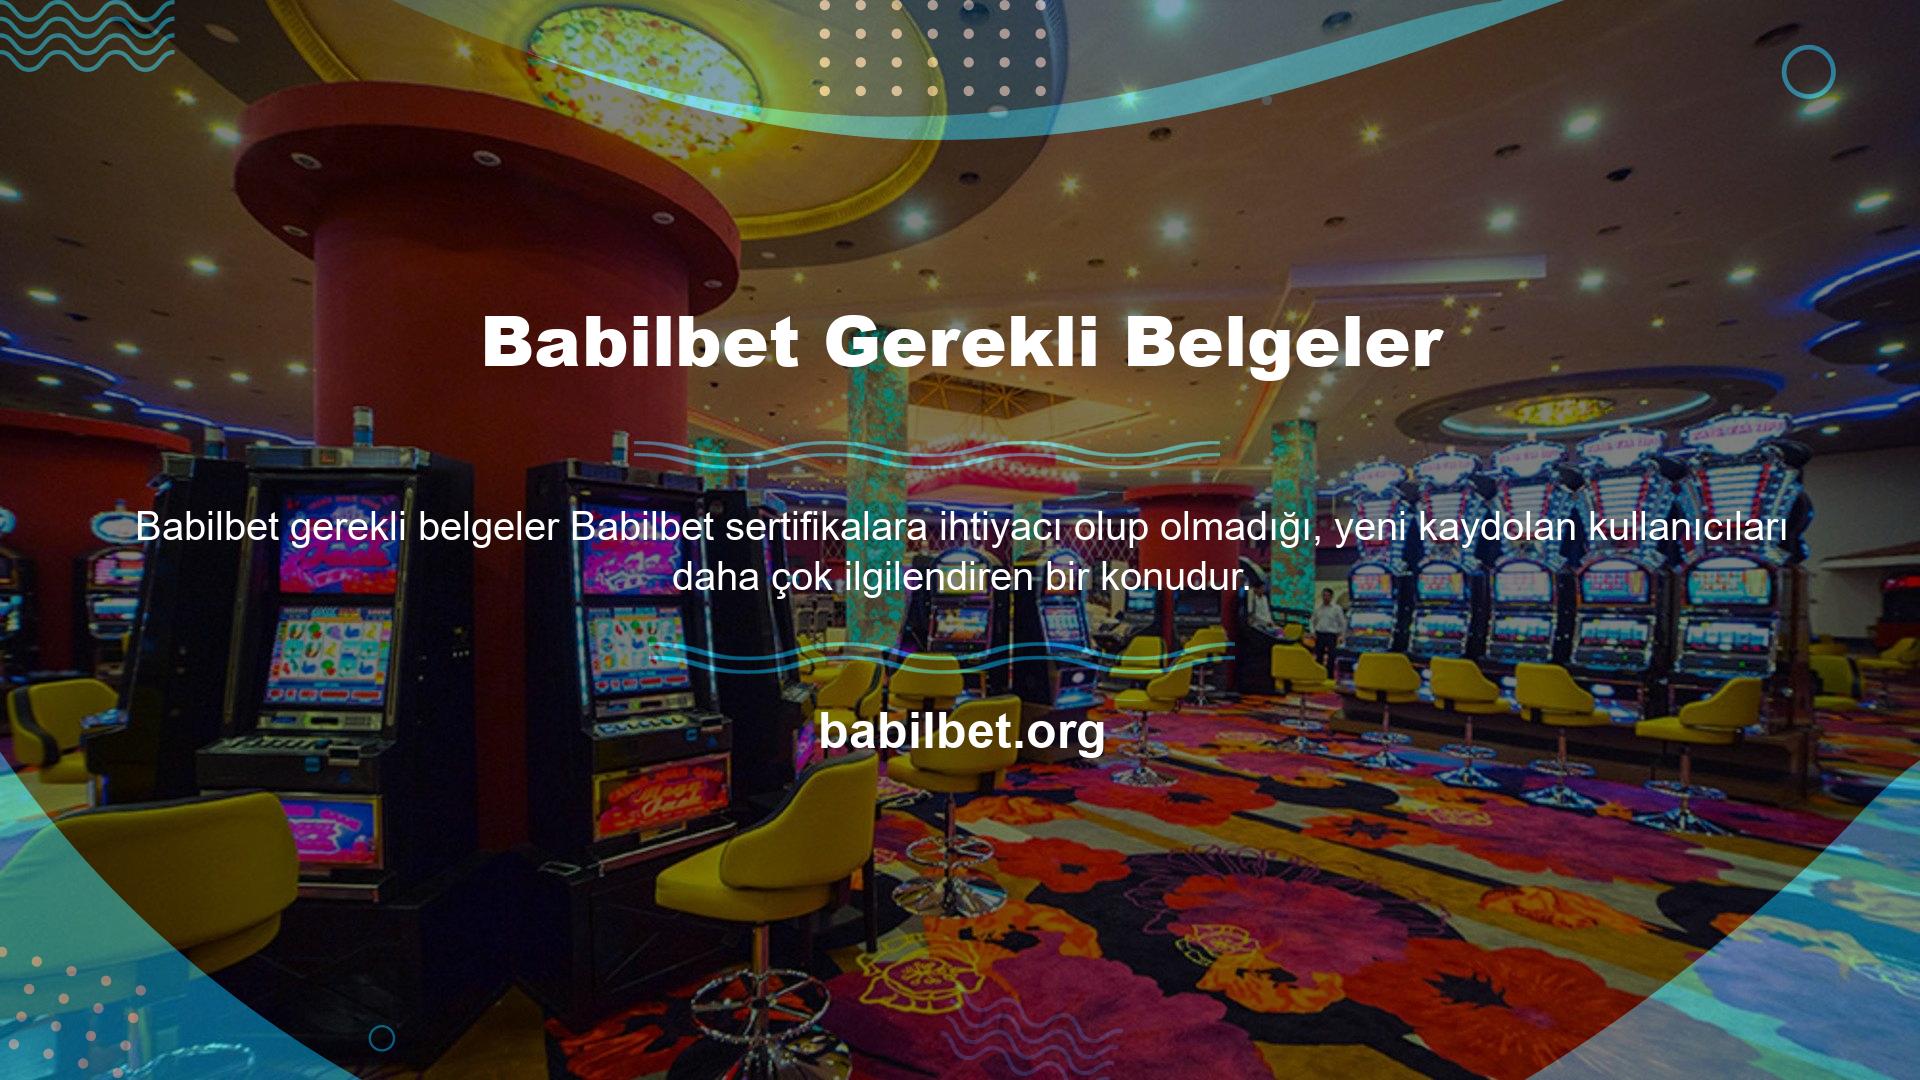 Tüm casino sitelerinde olduğu gibi, Babilbet de belgeleri sağlamak için prosedürleri izlemesi gerektiği tespit edildi